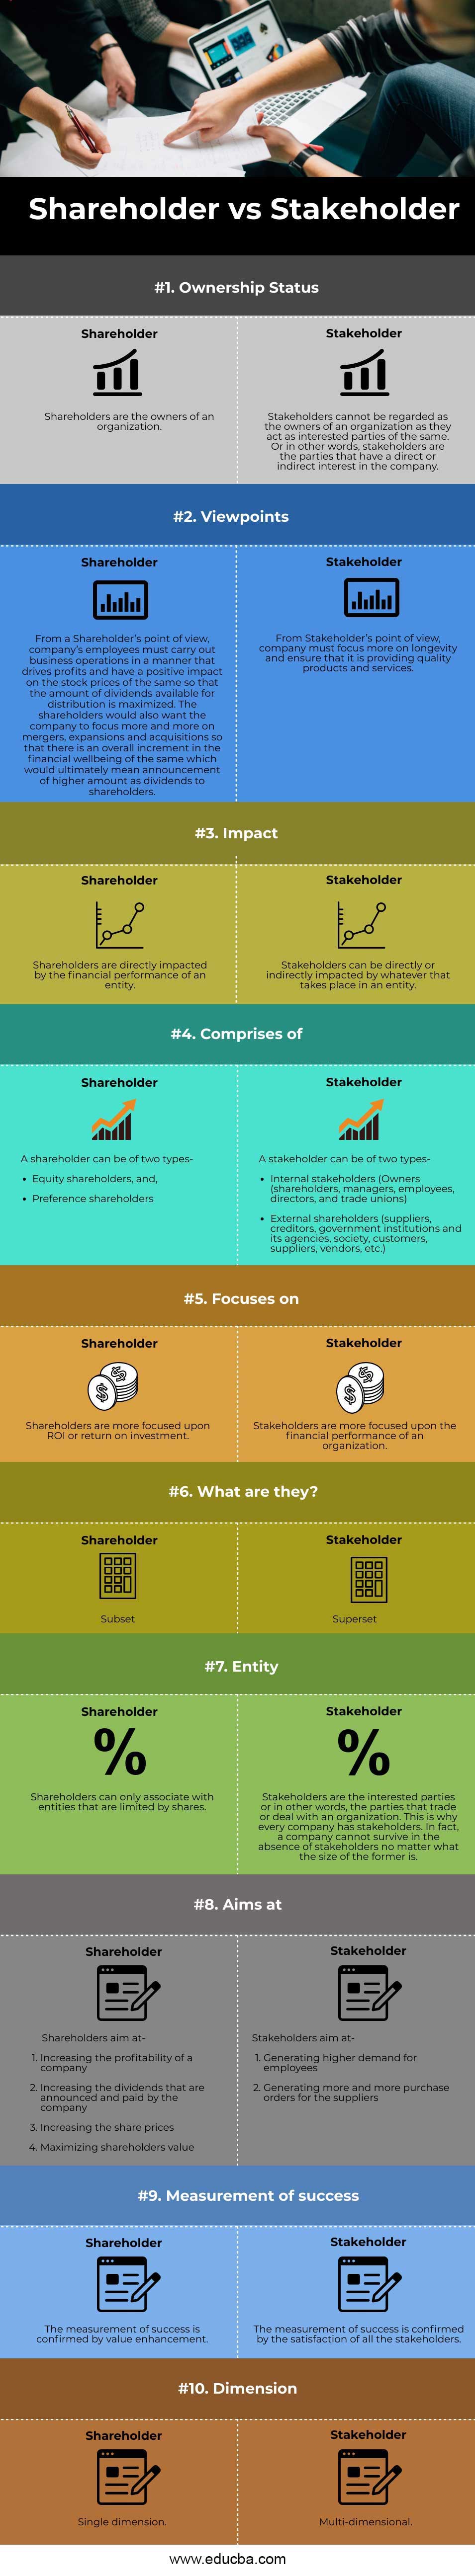 Shareholder-vs-Stakeholder-info